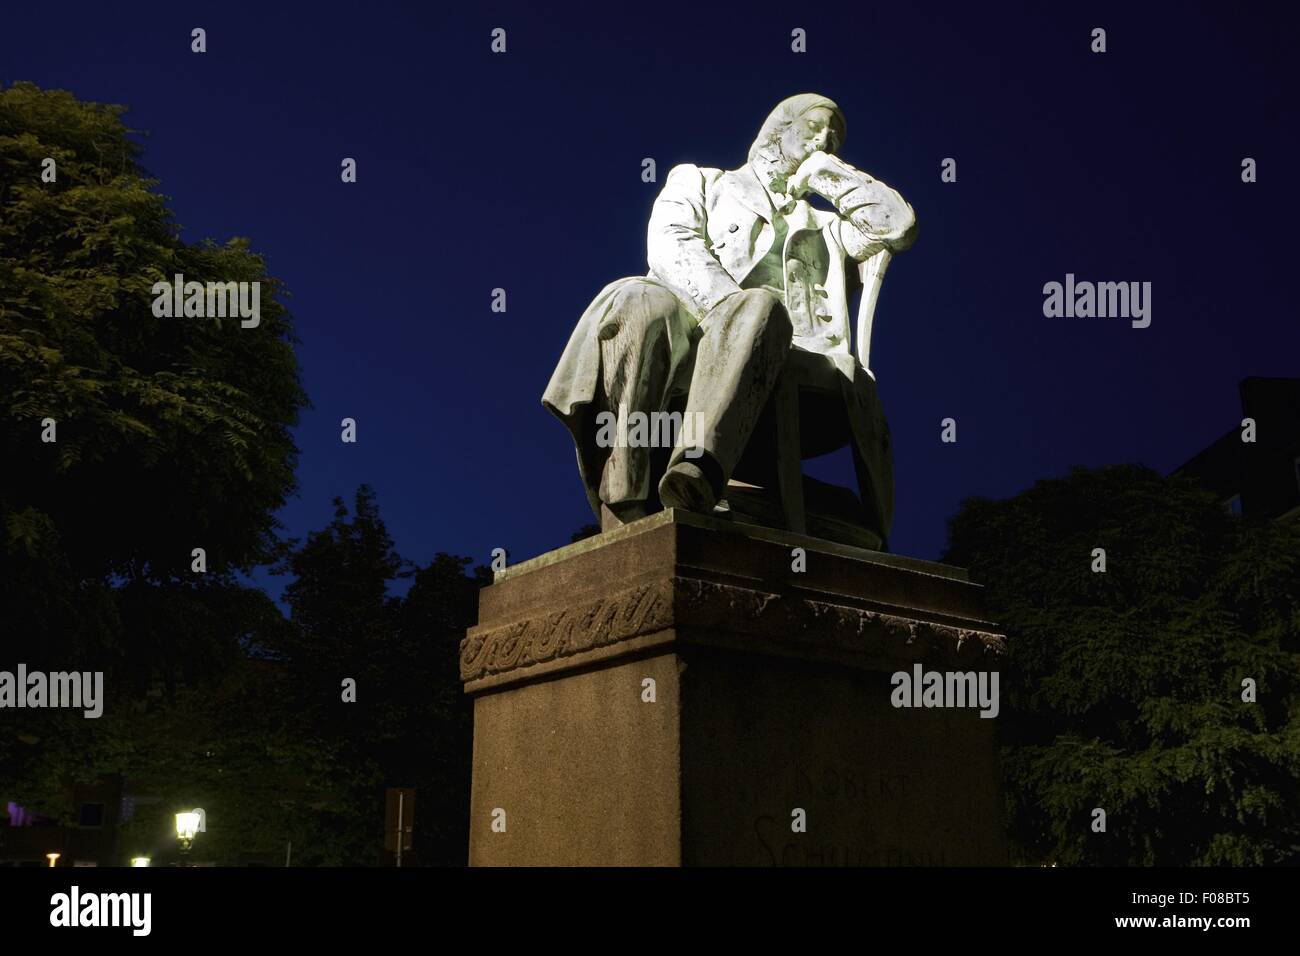 Schumann Monument Stock Photos - Free & Royalty-Free Stock Photos